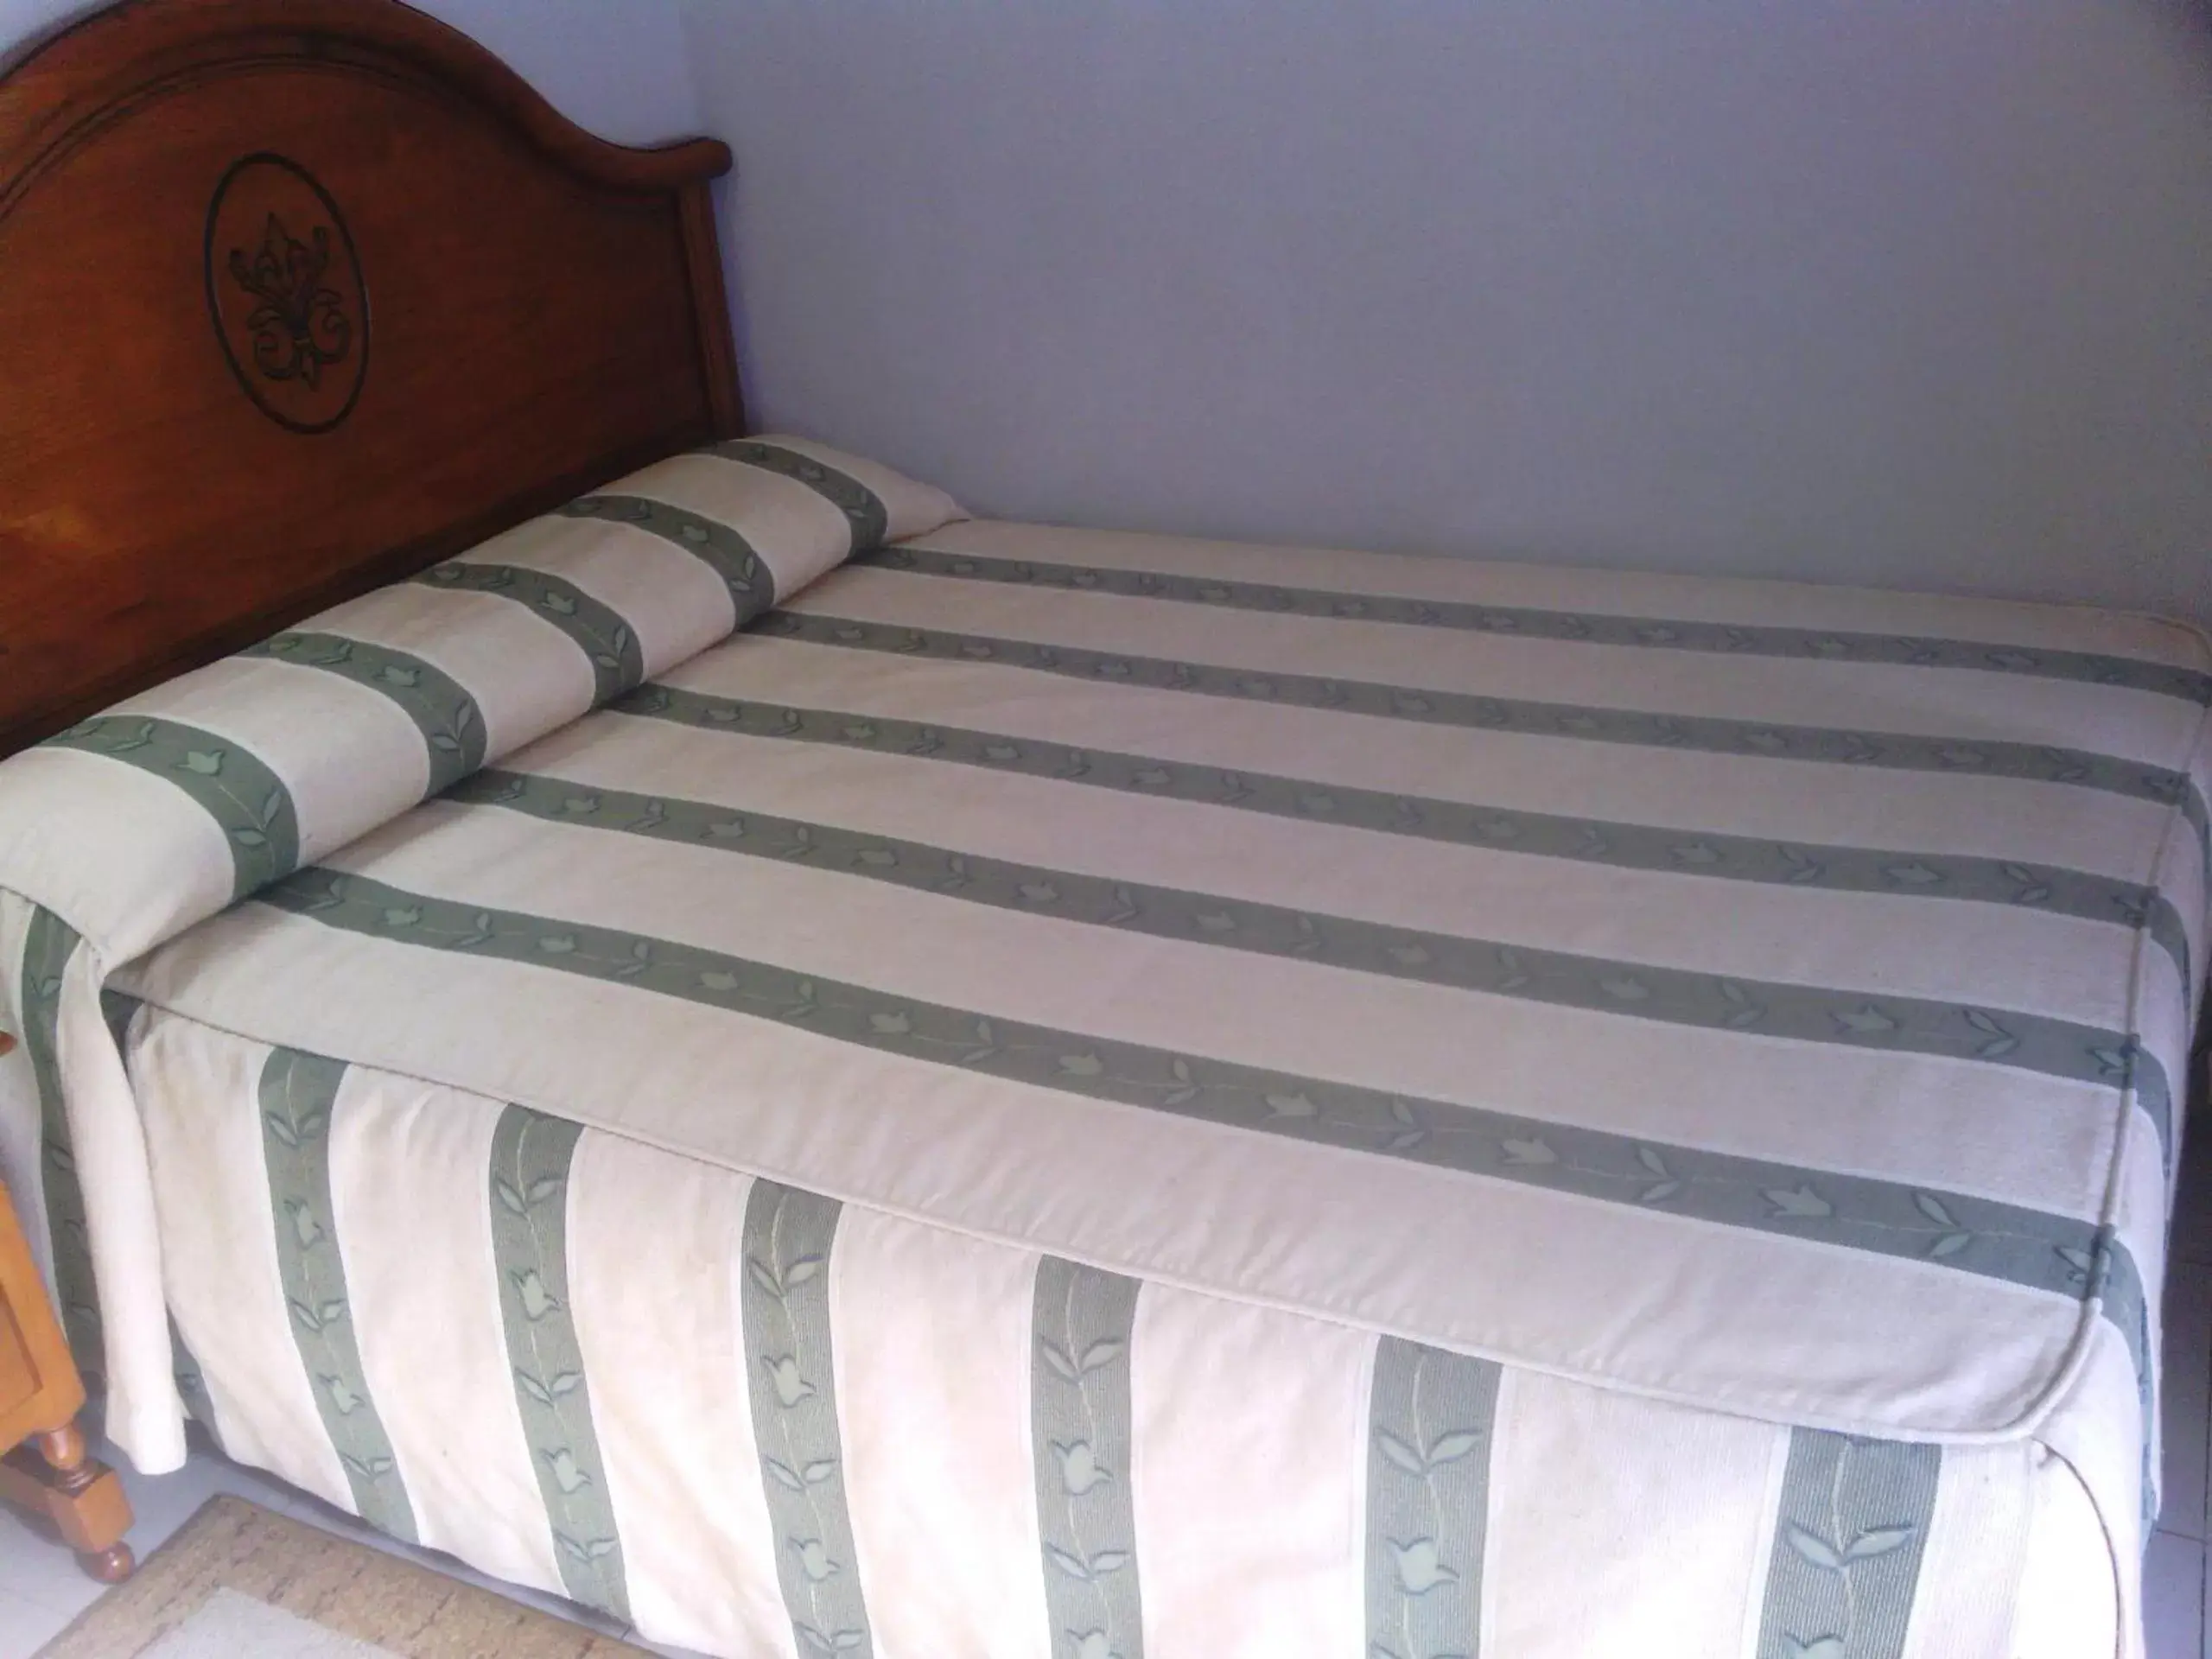 Bed in Hotel Goya